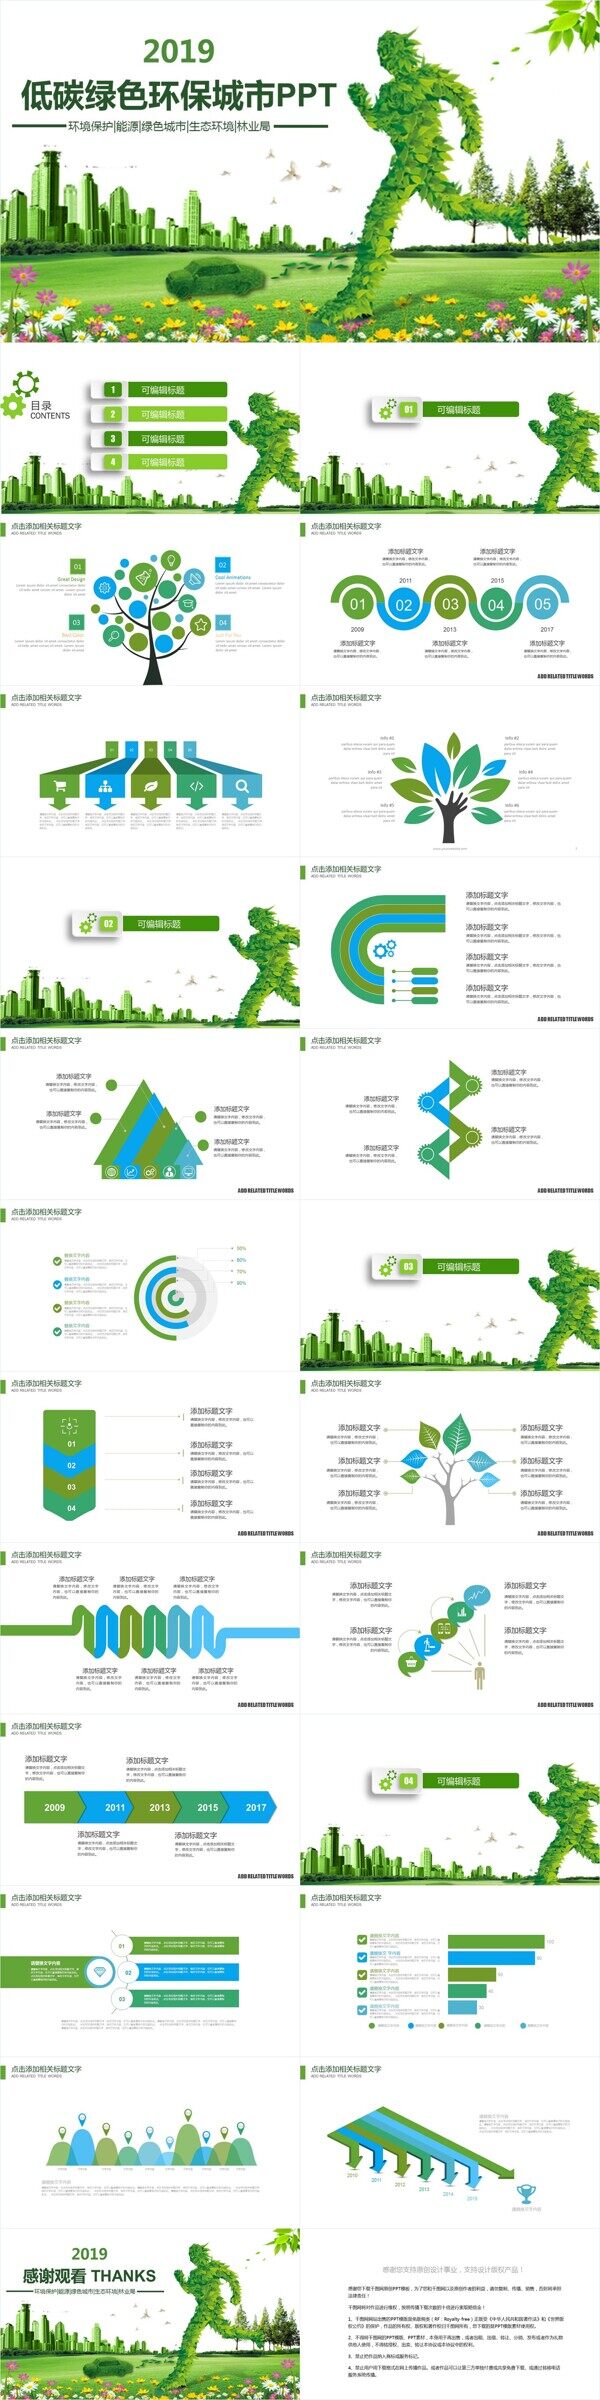 创意无规则图形低碳绿色环保宣传PPT模板